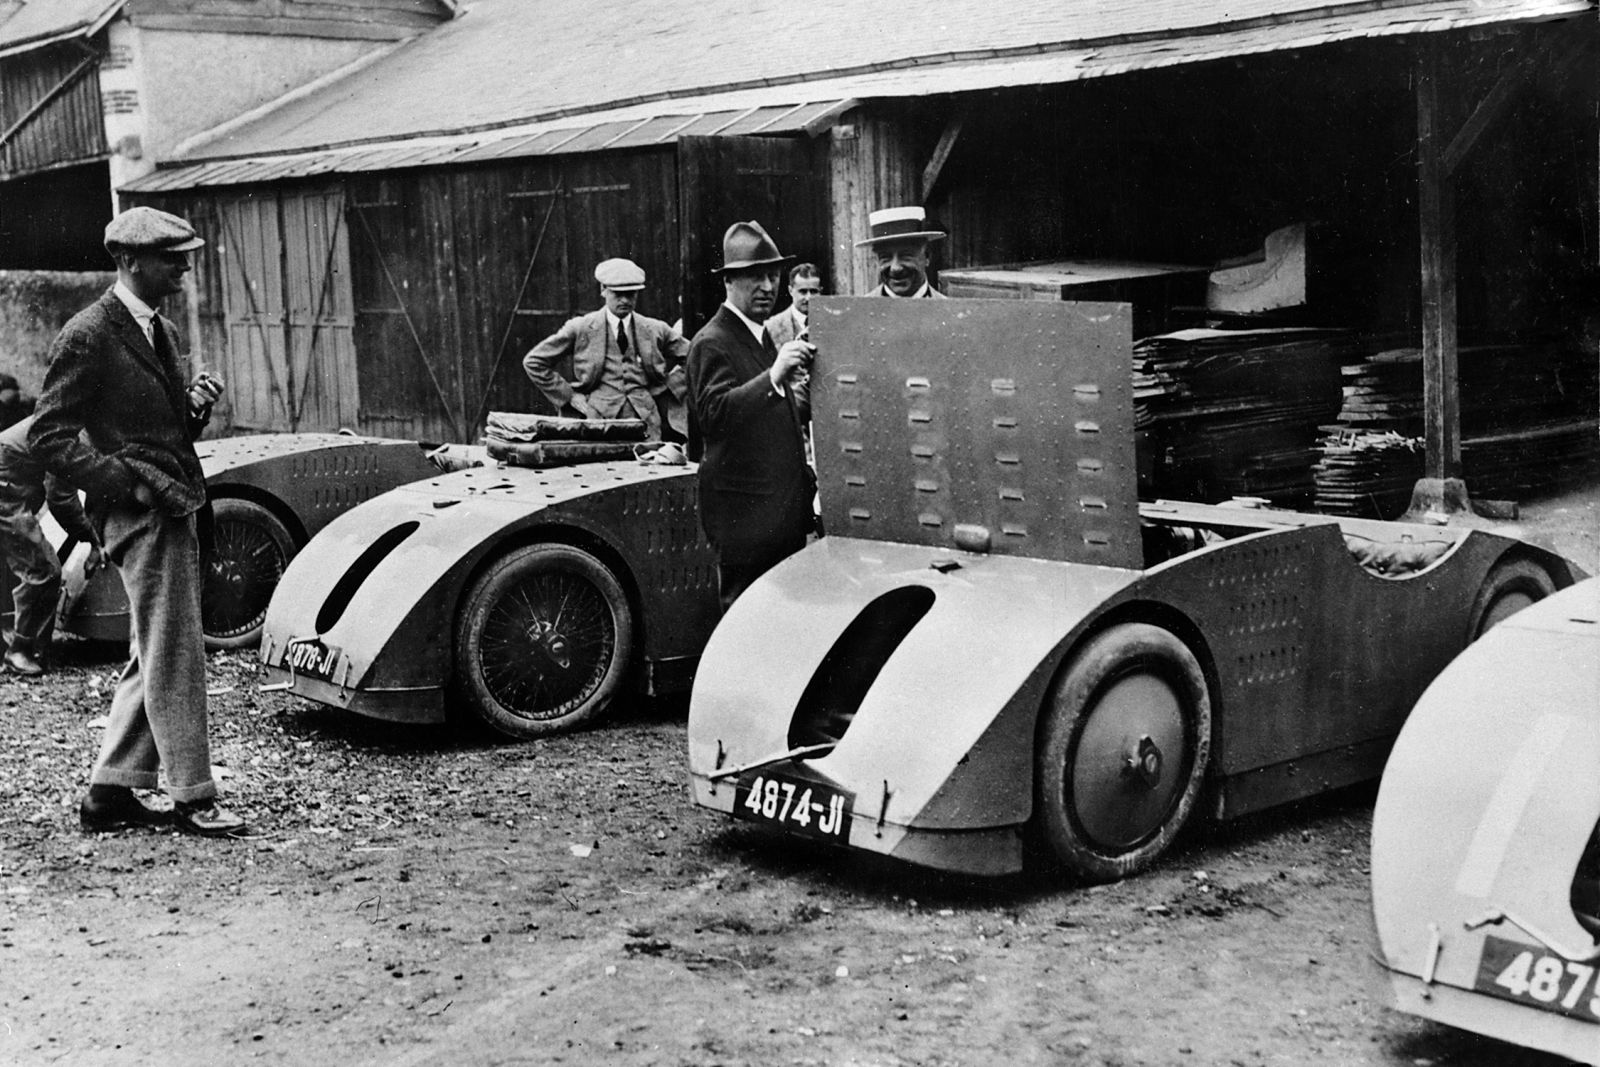 09 BUGATTI Tye 32 Tank 100 Años del Bugatti Tipo 32: "The Tank"